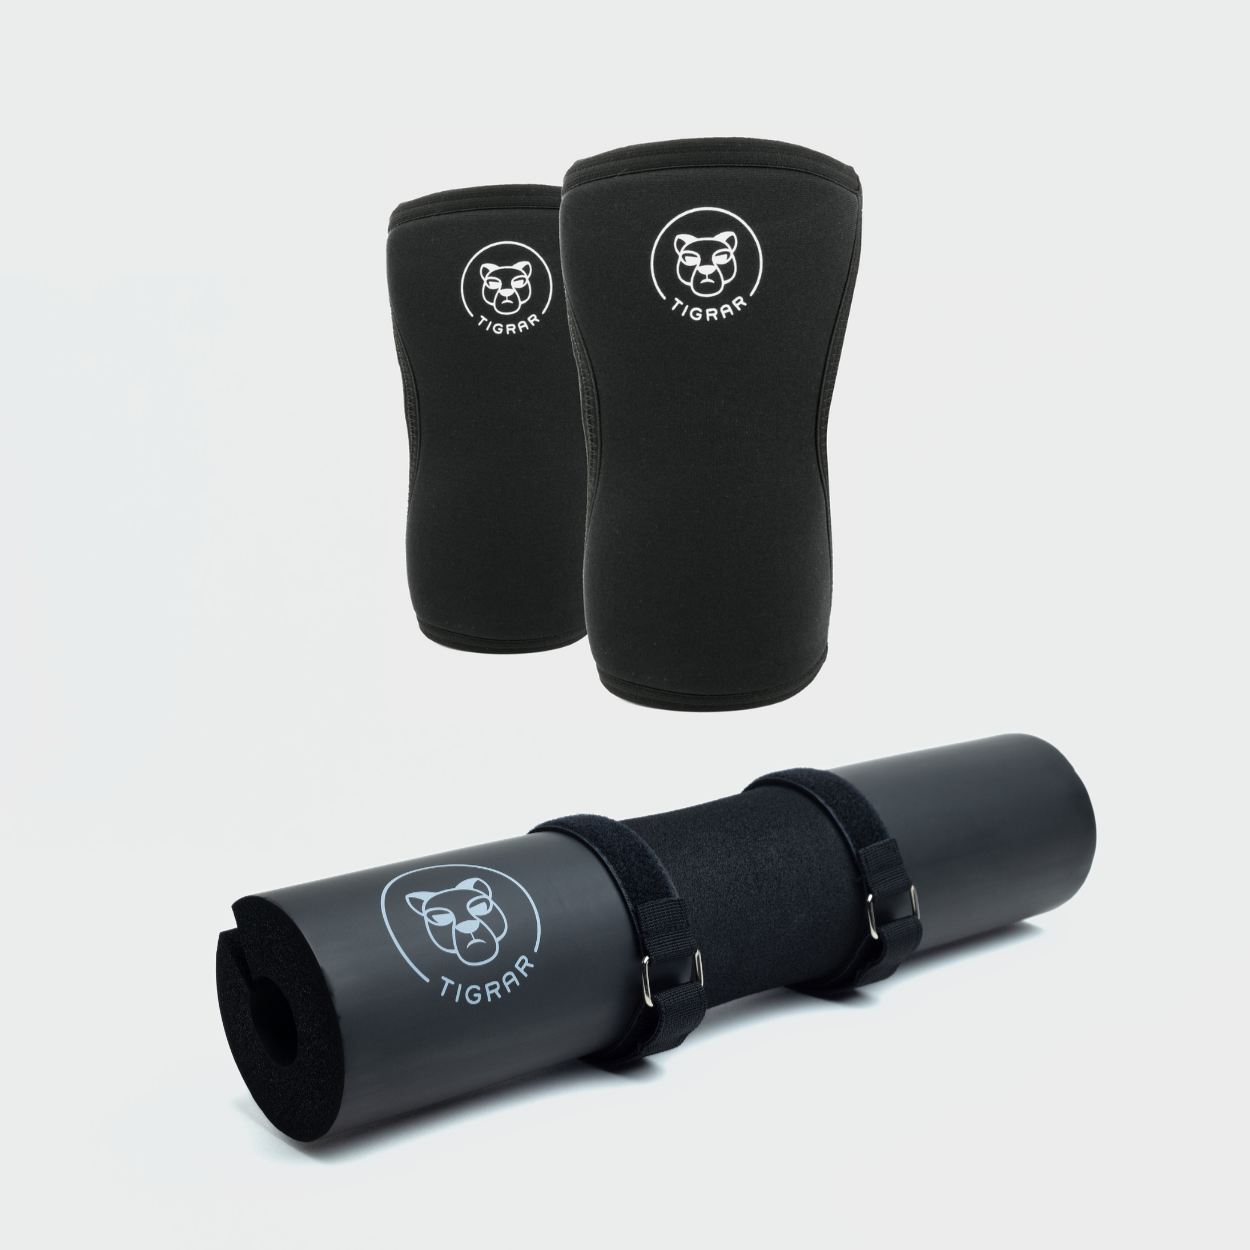 Zwarte Tigrar fitness accessoires getoond als een bundel set met strak ontworpen knee sleeves en een comfort verhogende barbell pad.